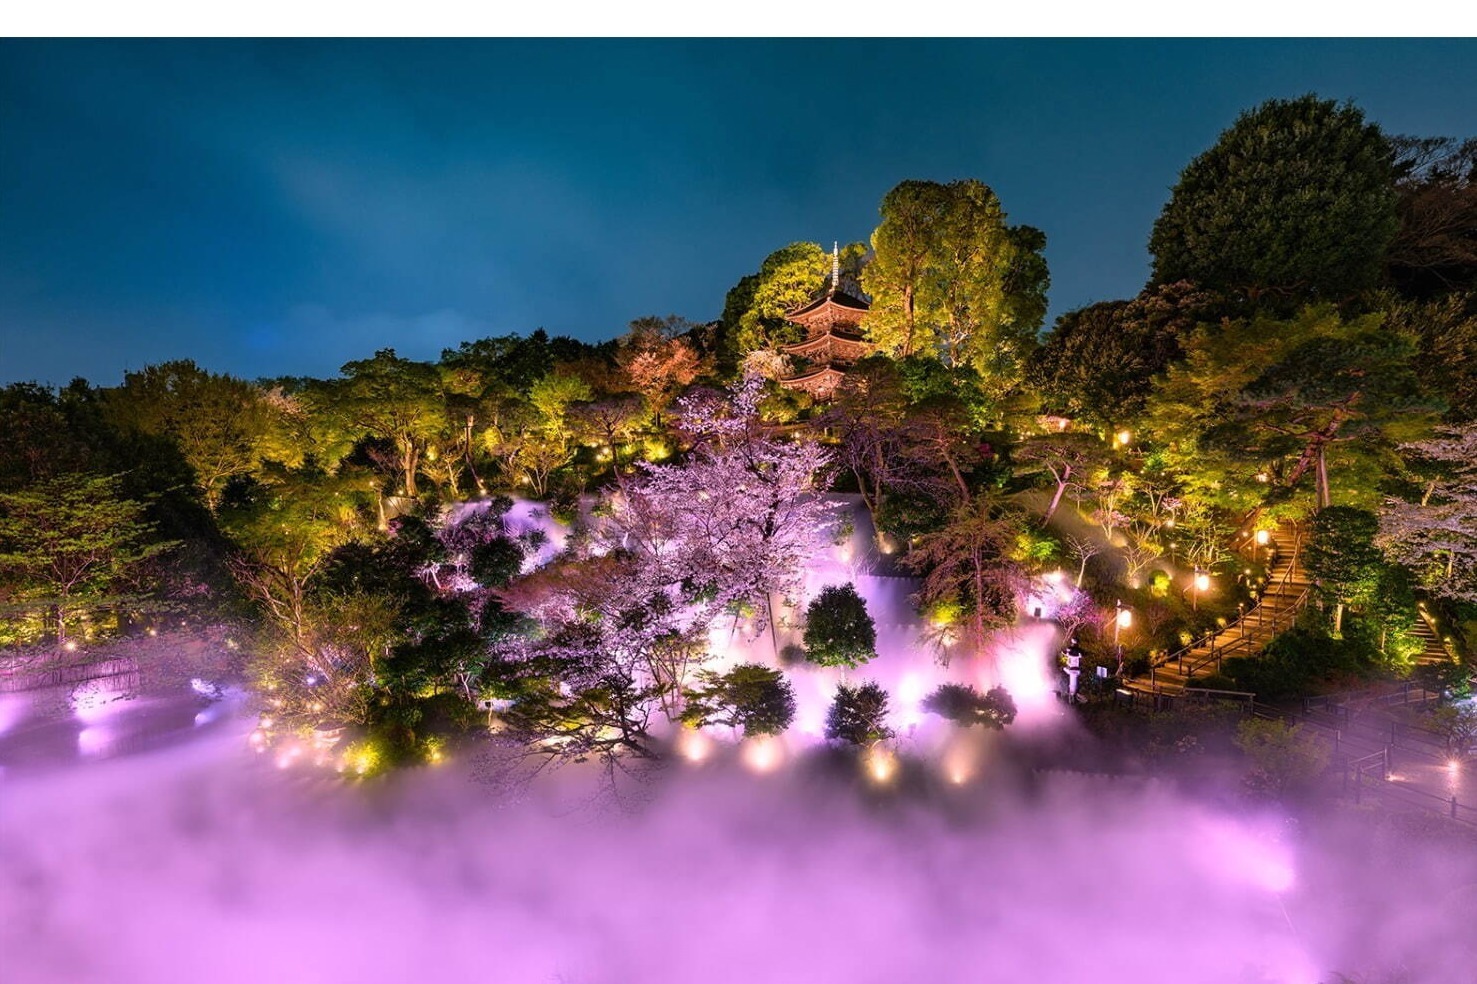 ホテル椿山荘東京で桜の庭園演出 夜桜雲海 夜はライトアップで幻想的な夜桜鑑賞 ファッションプレス